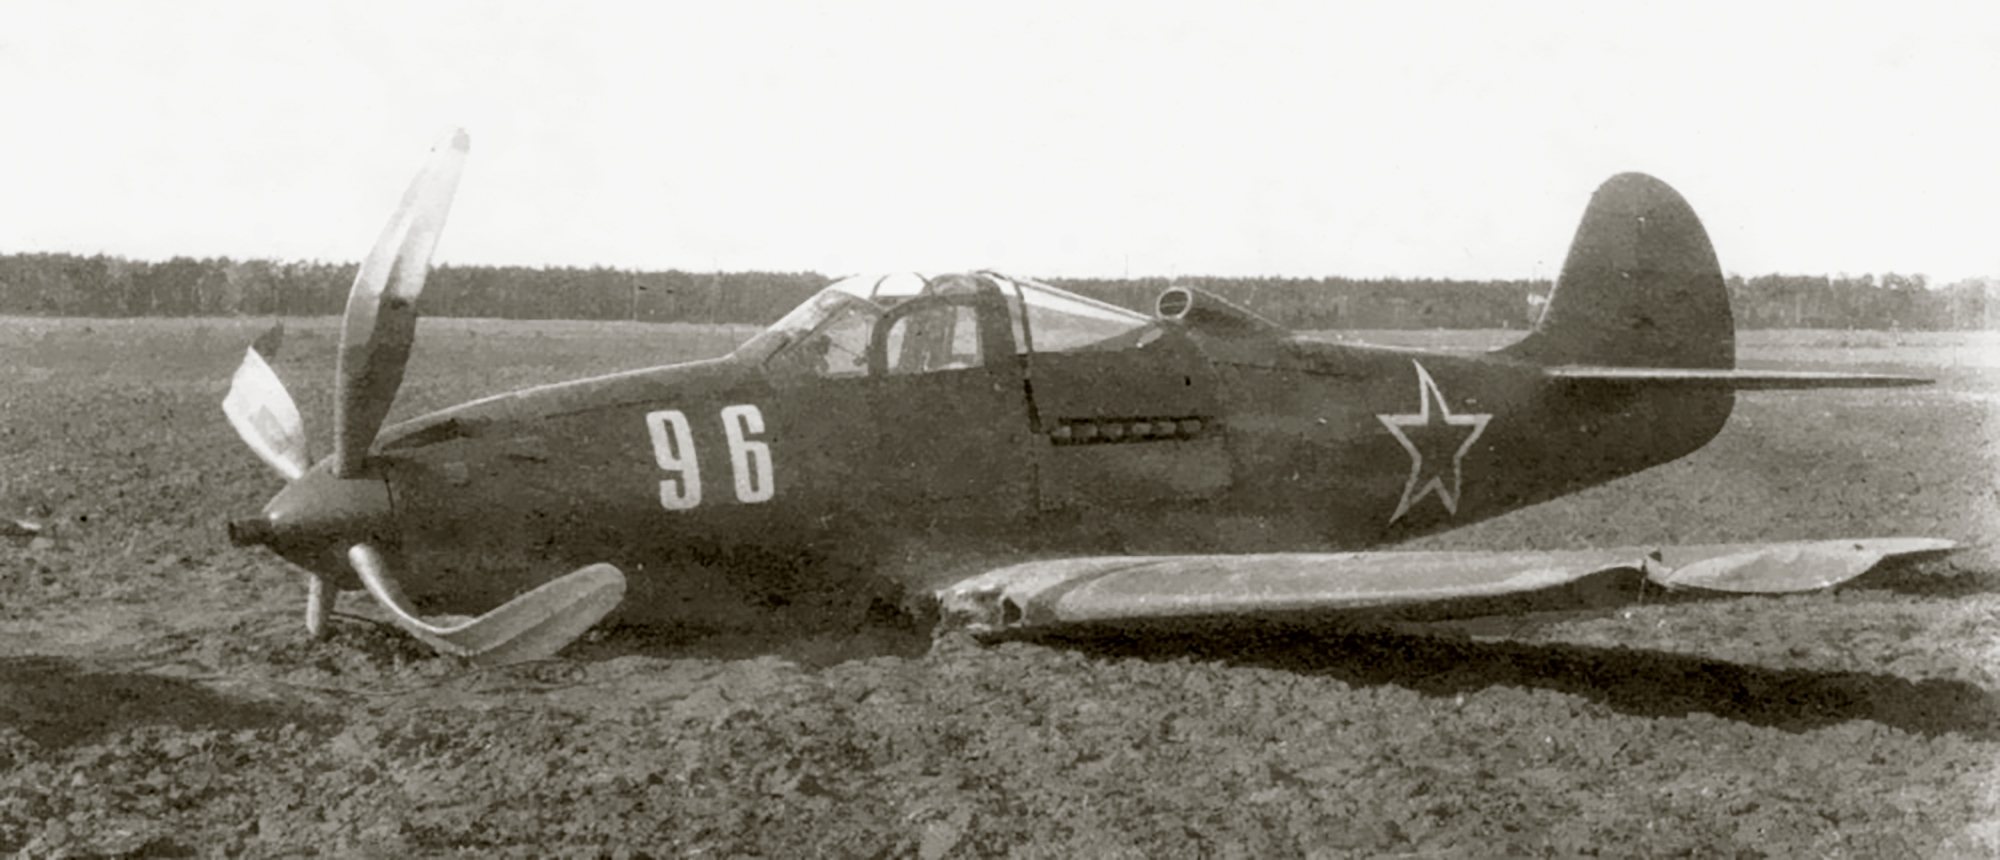 44 32552 Bell P 39Q Airacobra 213GvIAP 22GIAD White 96 belly landed Ukrainian Front 1944 01